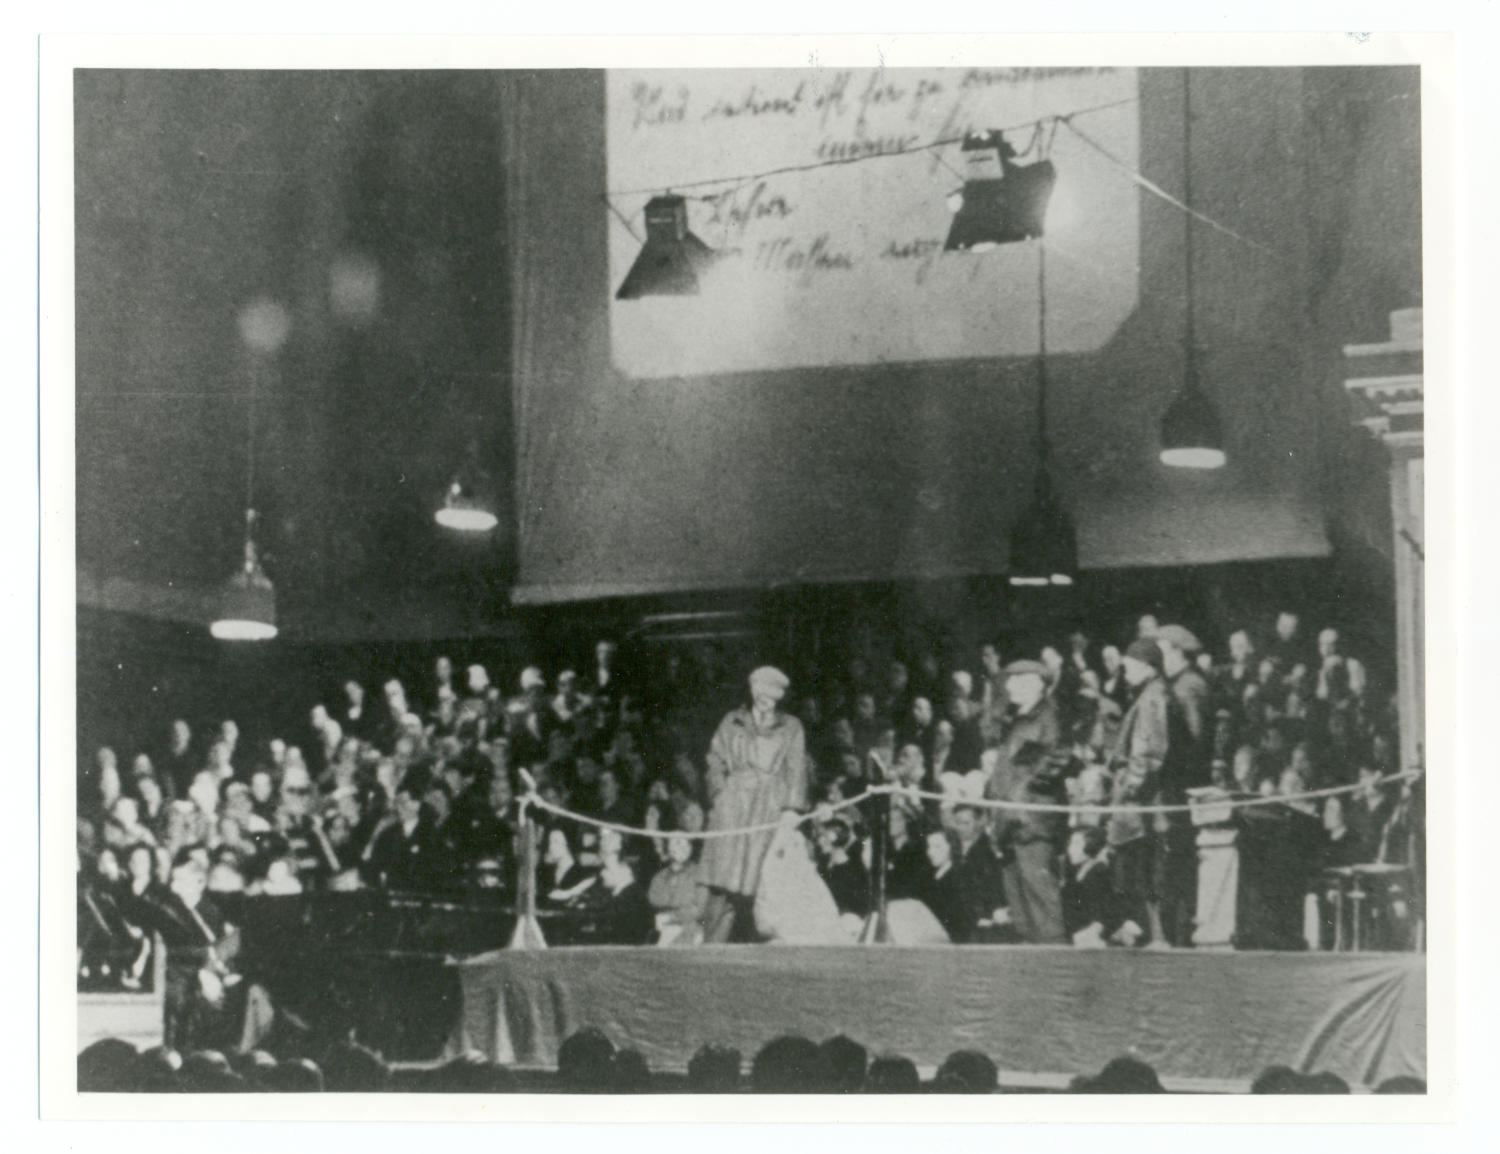 Auf der schwarz-weiß Fotografie sieht man eine abgekordelte Bühne mit vier Männern in Jacken und Mänteln. Viel Publikum sitzt um die Bühne. Im Hintergrund ist ein handgeschriebener Zettel auf eine Leinwand projiziert.